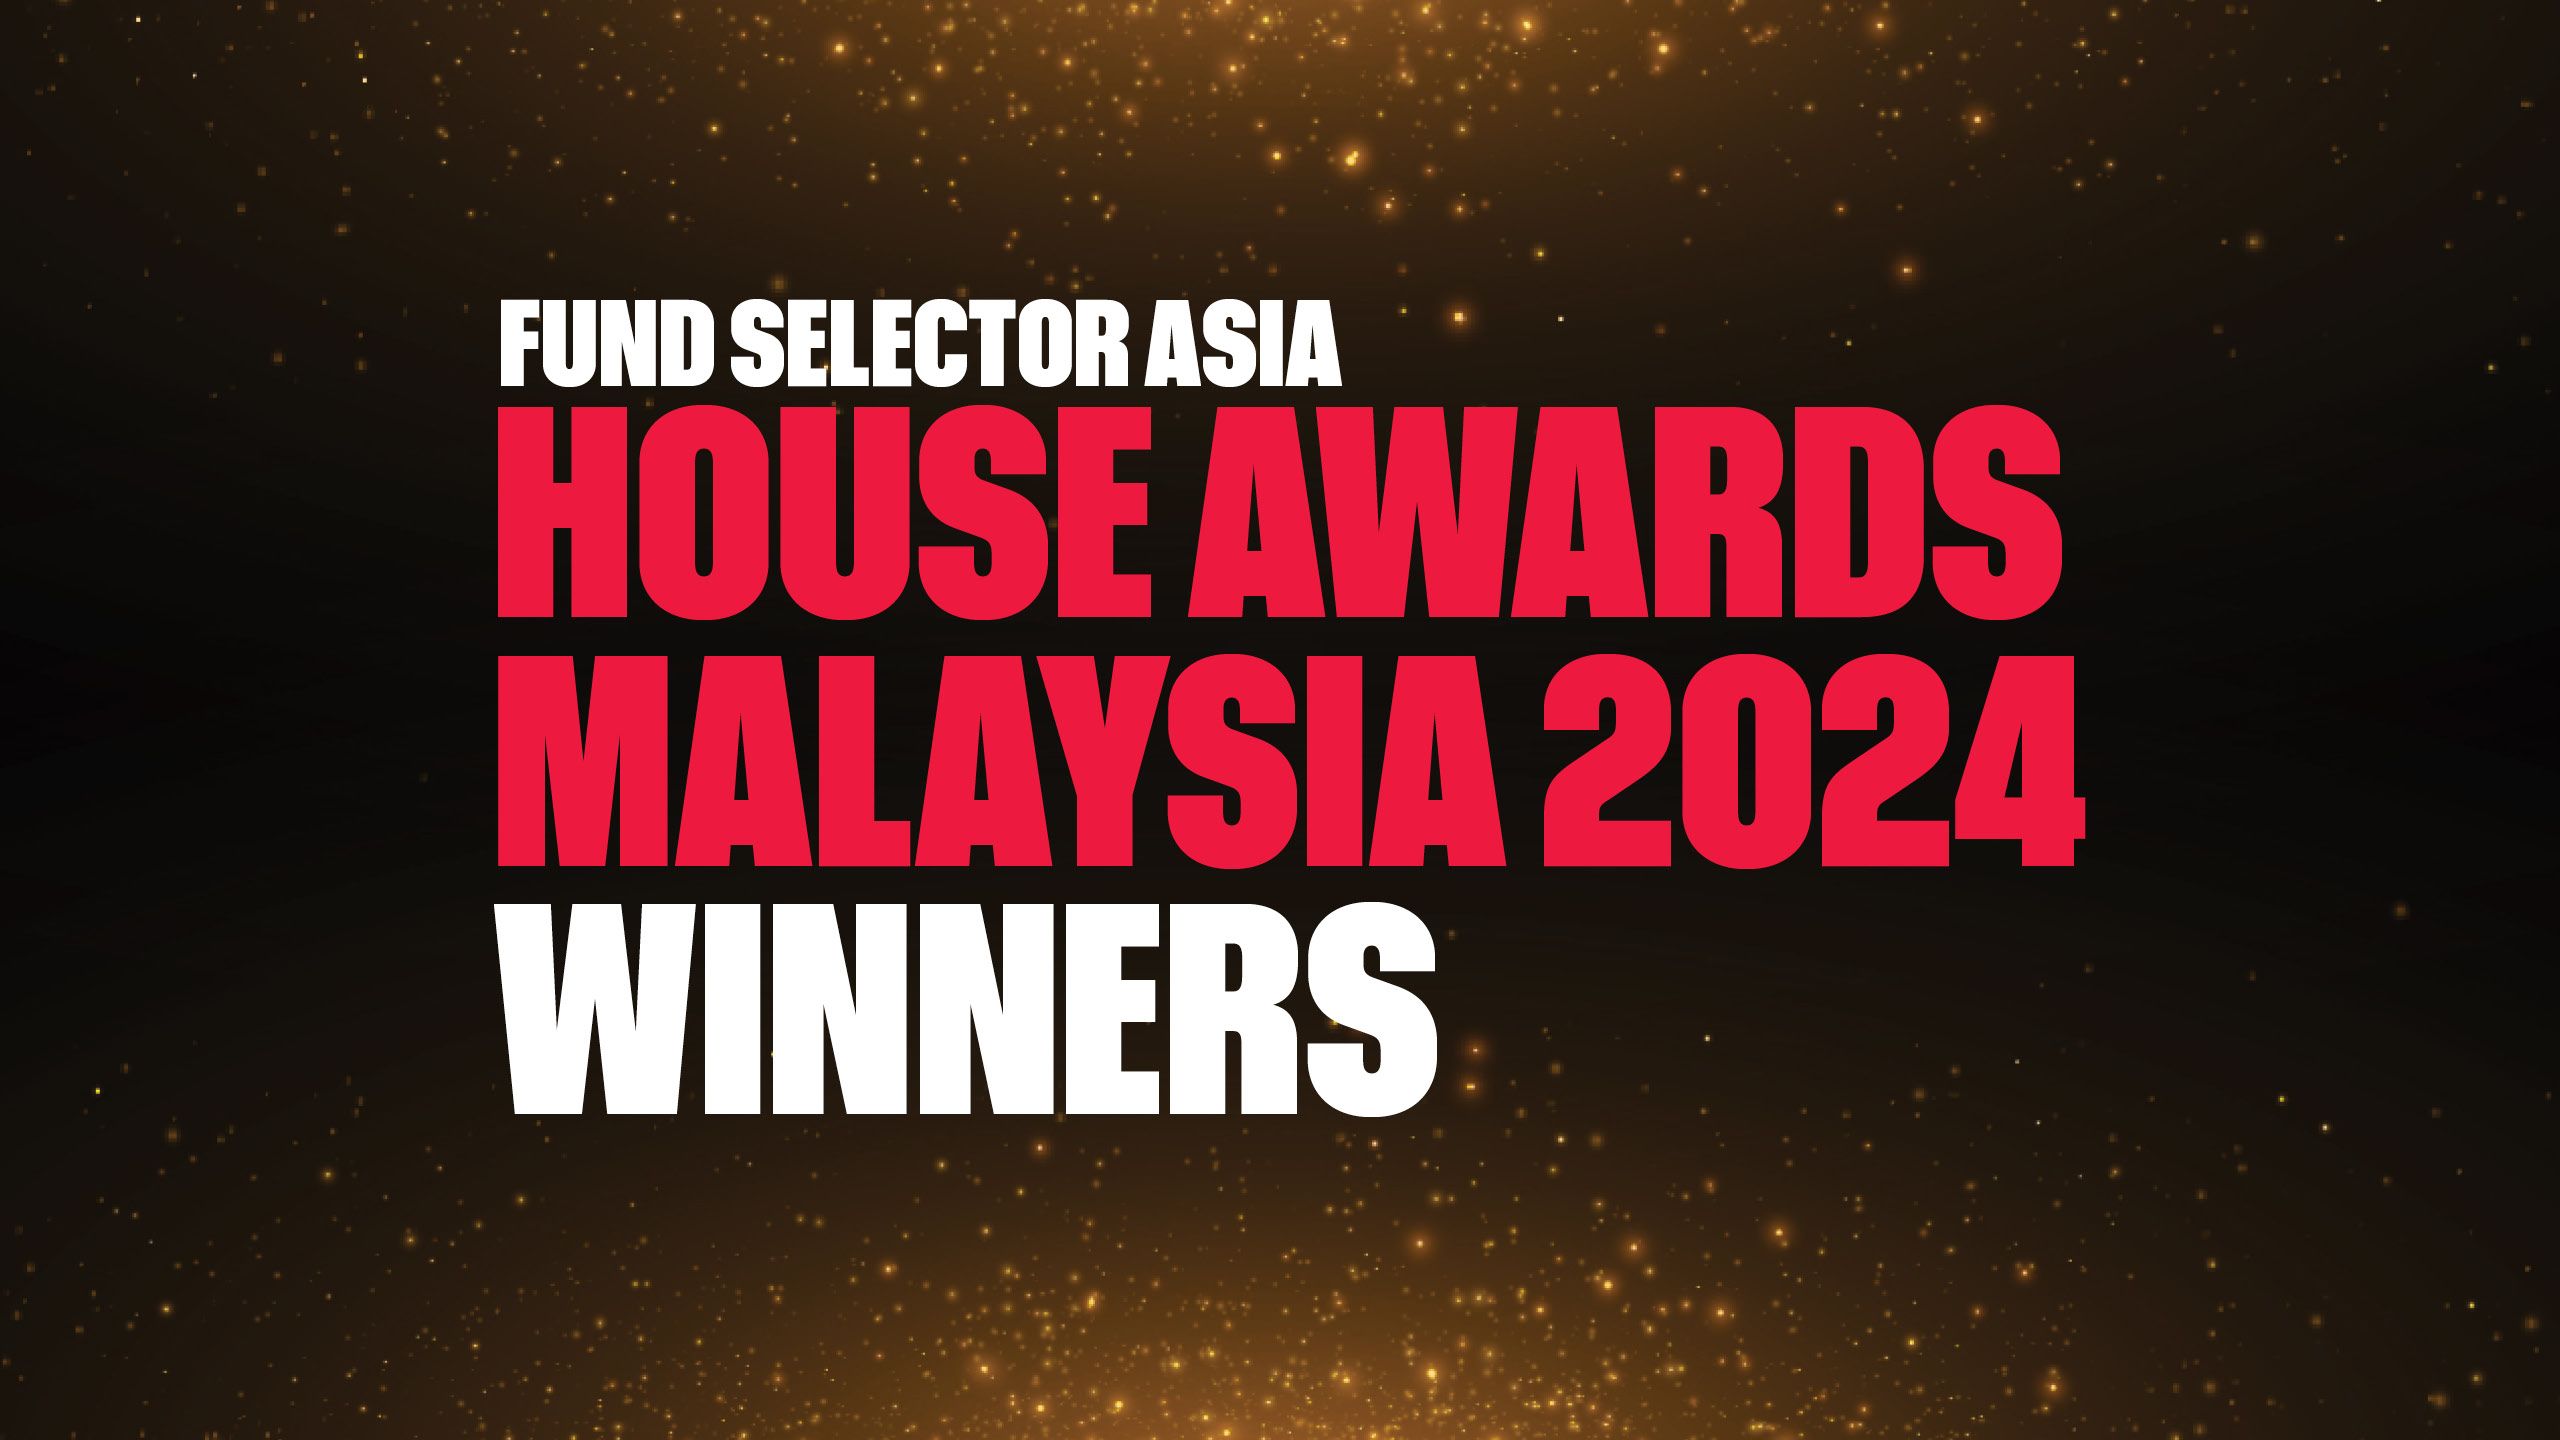 2024 年马来西亚 FSA House Awards 获奖者是……